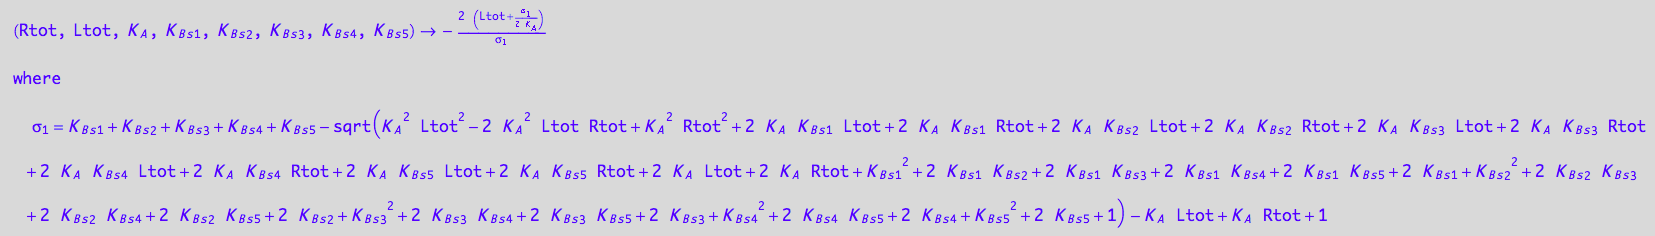 (Rtot, Ltot, K_A, K_B_s_1, K_B_s_2, K_B_s_3, K_B_s_4, K_B_s_5) -> -(2*(Ltot + (K_B_s_1 + K_B_s_2 + K_B_s_3 + K_B_s_4 + K_B_s_5 - (K_A^2*Ltot^2 - 2*K_A^2*Ltot*Rtot + K_A^2*Rtot^2 + 2*K_A*K_B_s_1*Ltot + 2*K_A*K_B_s_1*Rtot + 2*K_A*K_B_s_2*Ltot + 2*K_A*K_B_s_2*Rtot + 2*K_A*K_B_s_3*Ltot + 2*K_A*K_B_s_3*Rtot + 2*K_A*K_B_s_4*Ltot + 2*K_A*K_B_s_4*Rtot + 2*K_A*K_B_s_5*Ltot + 2*K_A*K_B_s_5*Rtot + 2*K_A*Ltot + 2*K_A*Rtot + K_B_s_1^2 + 2*K_B_s_1*K_B_s_2 + 2*K_B_s_1*K_B_s_3 + 2*K_B_s_1*K_B_s_4 + 2*K_B_s_1*K_B_s_5 + 2*K_B_s_1 + K_B_s_2^2 + 2*K_B_s_2*K_B_s_3 + 2*K_B_s_2*K_B_s_4 + 2*K_B_s_2*K_B_s_5 + 2*K_B_s_2 + K_B_s_3^2 + 2*K_B_s_3*K_B_s_4 + 2*K_B_s_3*K_B_s_5 + 2*K_B_s_3 + K_B_s_4^2 + 2*K_B_s_4*K_B_s_5 + 2*K_B_s_4 + K_B_s_5^2 + 2*K_B_s_5 + 1)^(1/2) - K_A*Ltot + K_A*Rtot + 1)/(2*K_A)))/(K_B_s_1 + K_B_s_2 + K_B_s_3 + K_B_s_4 + K_B_s_5 - (K_A^2*Ltot^2 - 2*K_A^2*Ltot*Rtot + K_A^2*Rtot^2 + 2*K_A*K_B_s_1*Ltot + 2*K_A*K_B_s_1*Rtot + 2*K_A*K_B_s_2*Ltot + 2*K_A*K_B_s_2*Rtot + 2*K_A*K_B_s_3*Ltot + 2*K_A*K_B_s_3*Rtot + 2*K_A*K_B_s_4*Ltot + 2*K_A*K_B_s_4*Rtot + 2*K_A*K_B_s_5*Ltot + 2*K_A*K_B_s_5*Rtot + 2*K_A*Ltot + 2*K_A*Rtot + K_B_s_1^2 + 2*K_B_s_1*K_B_s_2 + 2*K_B_s_1*K_B_s_3 + 2*K_B_s_1*K_B_s_4 + 2*K_B_s_1*K_B_s_5 + 2*K_B_s_1 + K_B_s_2^2 + 2*K_B_s_2*K_B_s_3 + 2*K_B_s_2*K_B_s_4 + 2*K_B_s_2*K_B_s_5 + 2*K_B_s_2 + K_B_s_3^2 + 2*K_B_s_3*K_B_s_4 + 2*K_B_s_3*K_B_s_5 + 2*K_B_s_3 + K_B_s_4^2 + 2*K_B_s_4*K_B_s_5 + 2*K_B_s_4 + K_B_s_5^2 + 2*K_B_s_5 + 1)^(1/2) - K_A*Ltot + K_A*Rtot + 1)